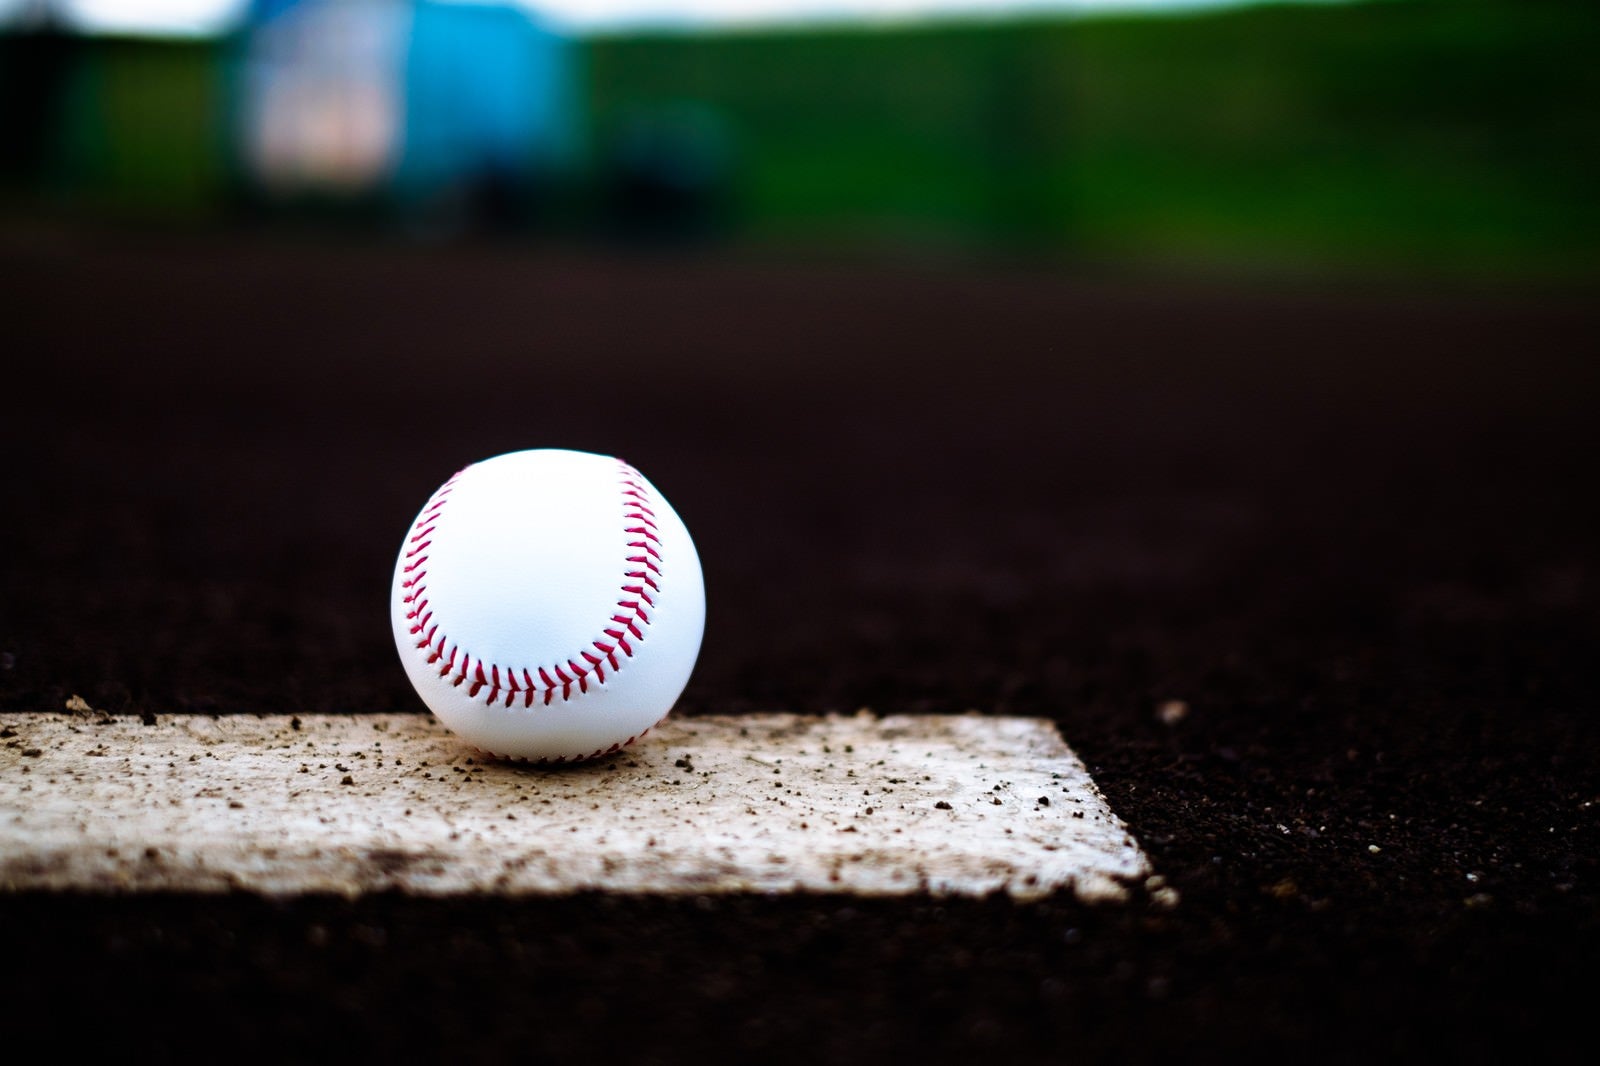 「ベース上に置かれた野球のボール」の写真